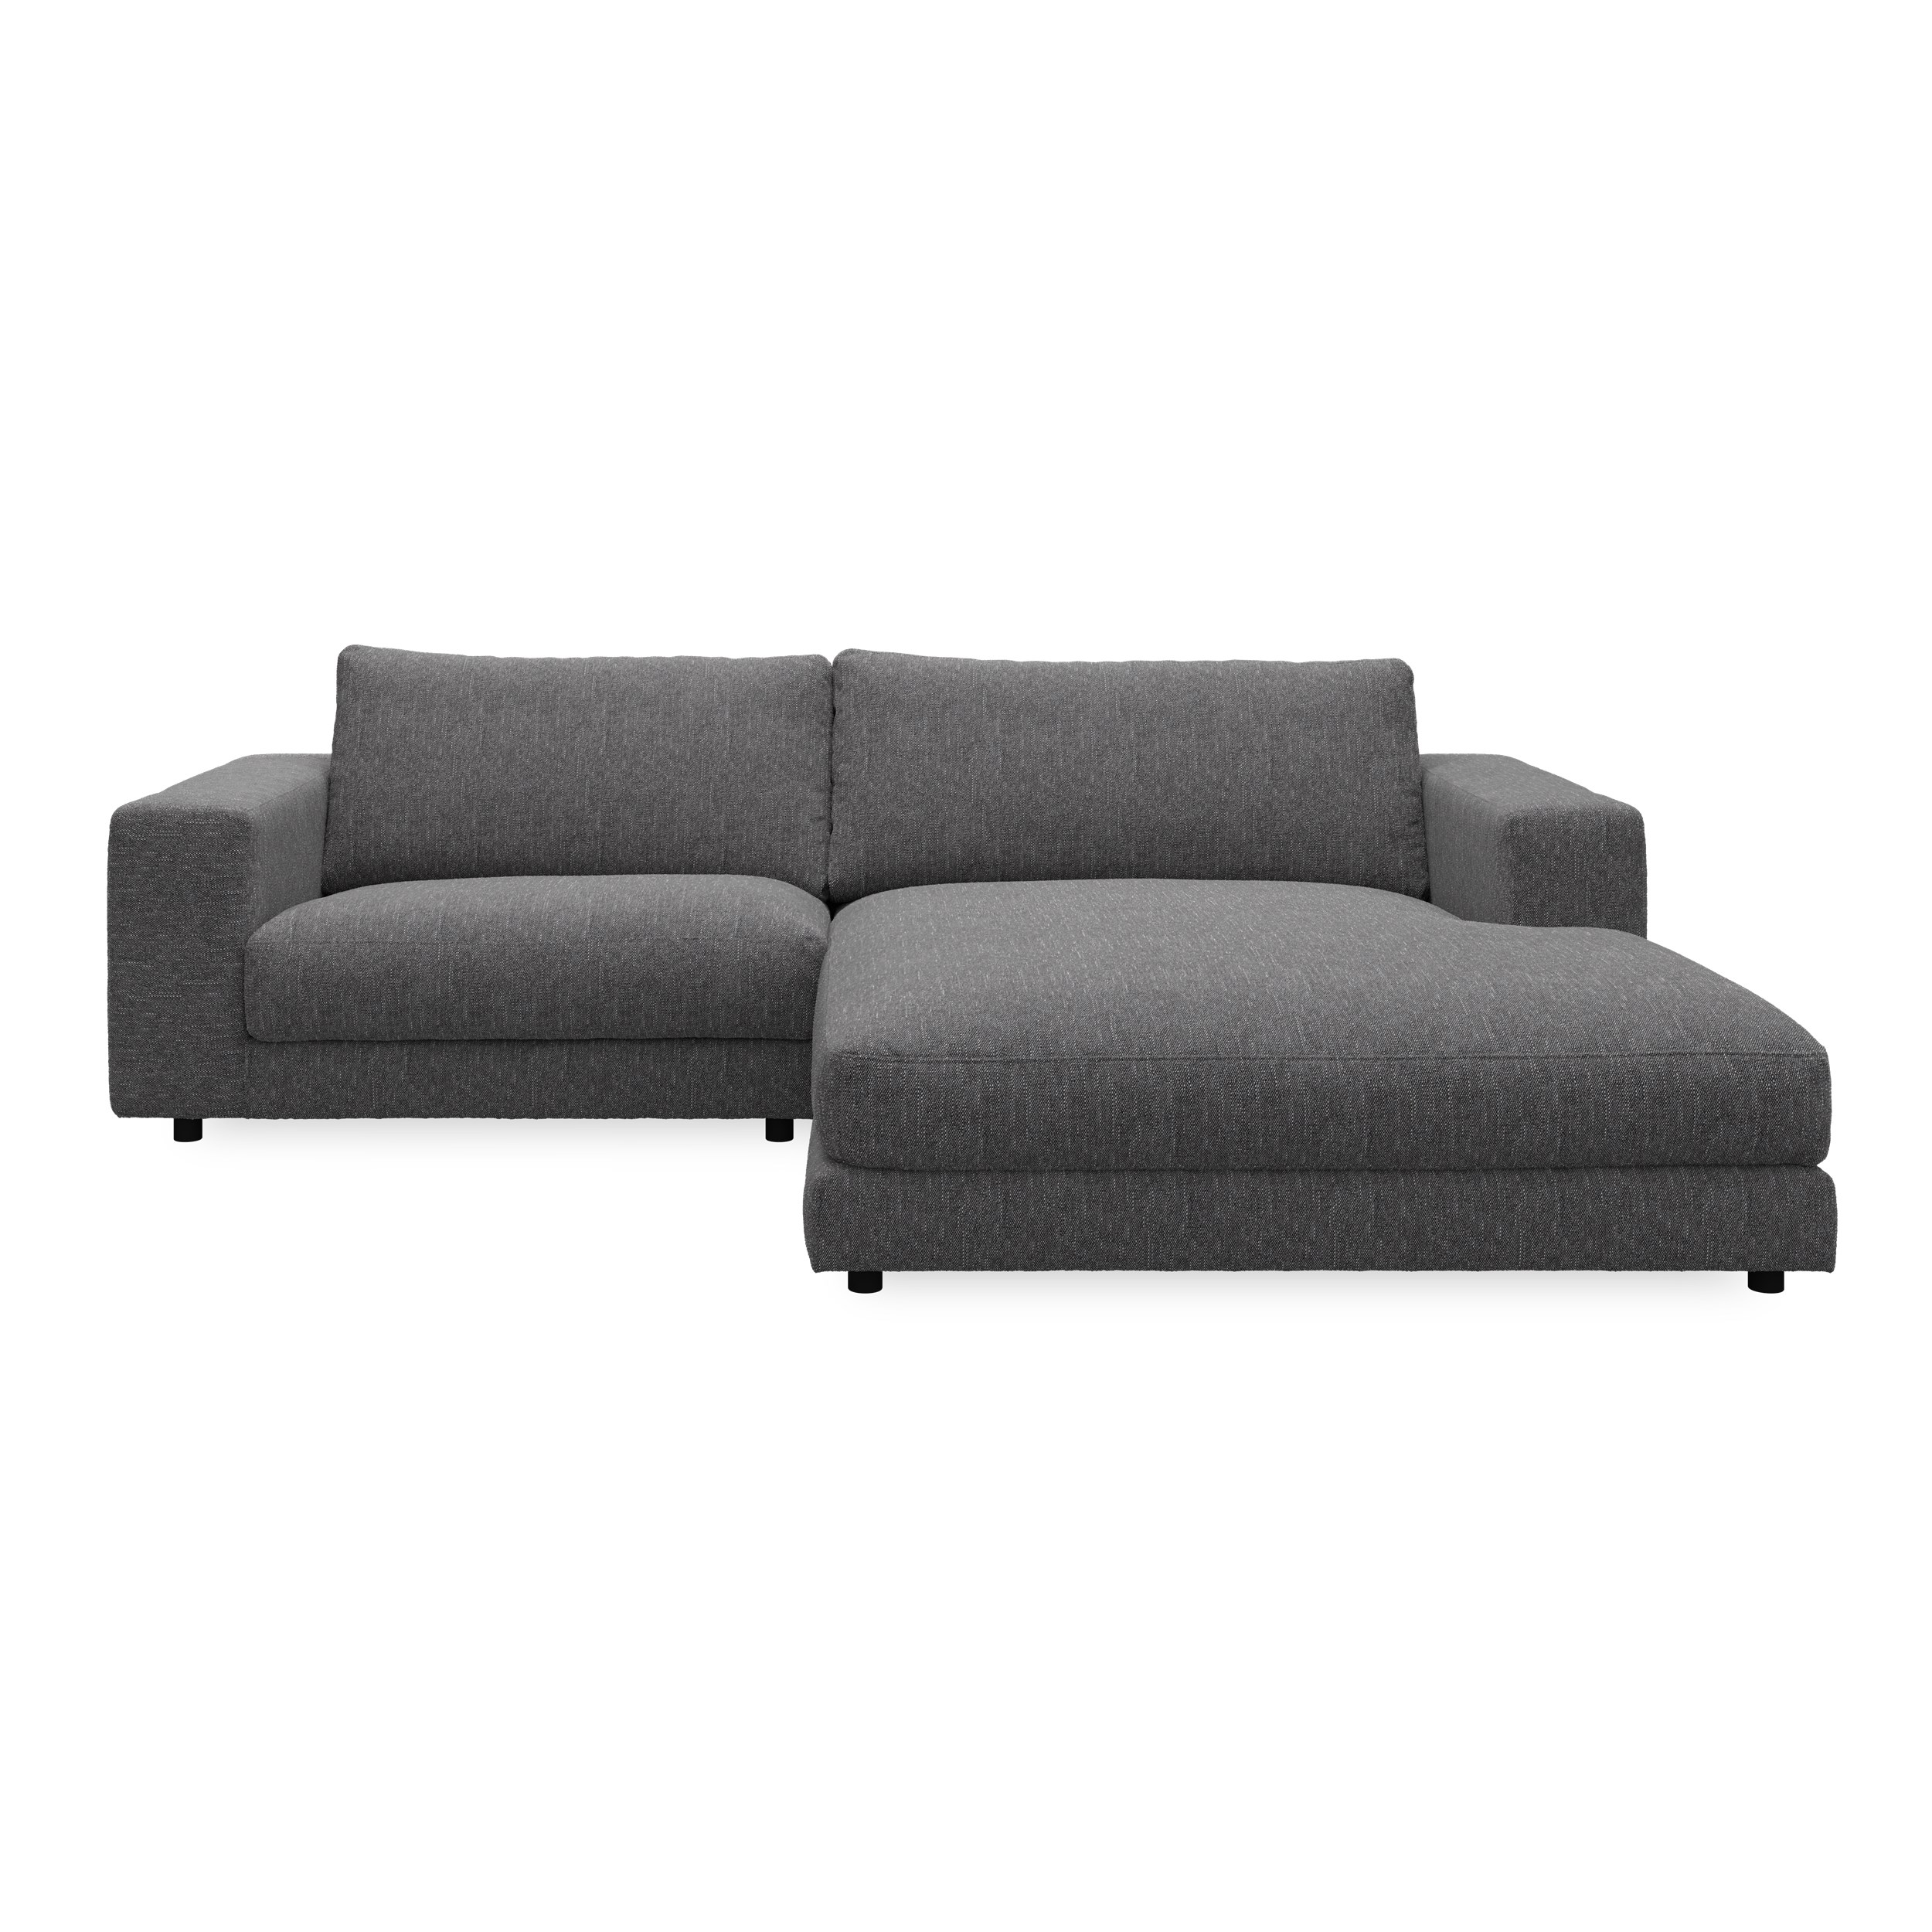 Bennent högervänd soffa med schäslong - Yelda Grey klädsel, ben i svart plast och S:skum/fib/din/sili R:Dun/skum